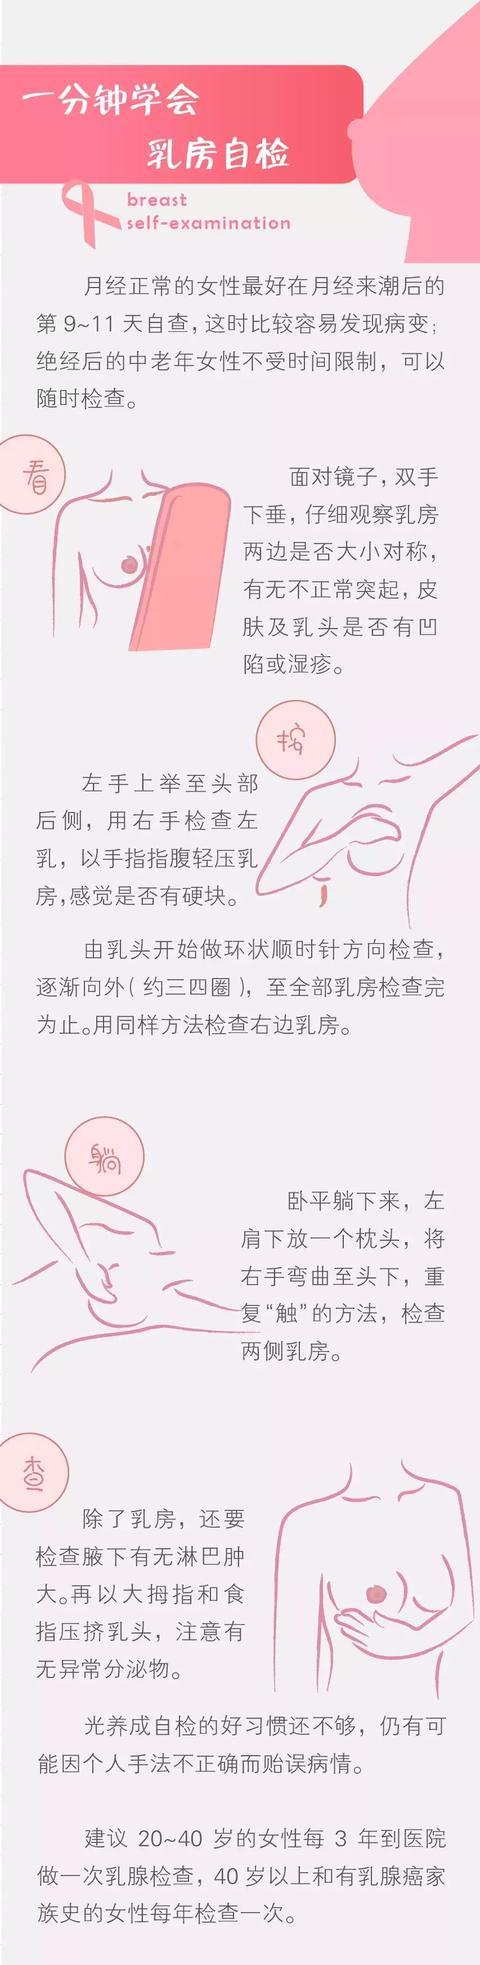 被乳腺癌毁掉的中国女性4个字给乳房自检划重点